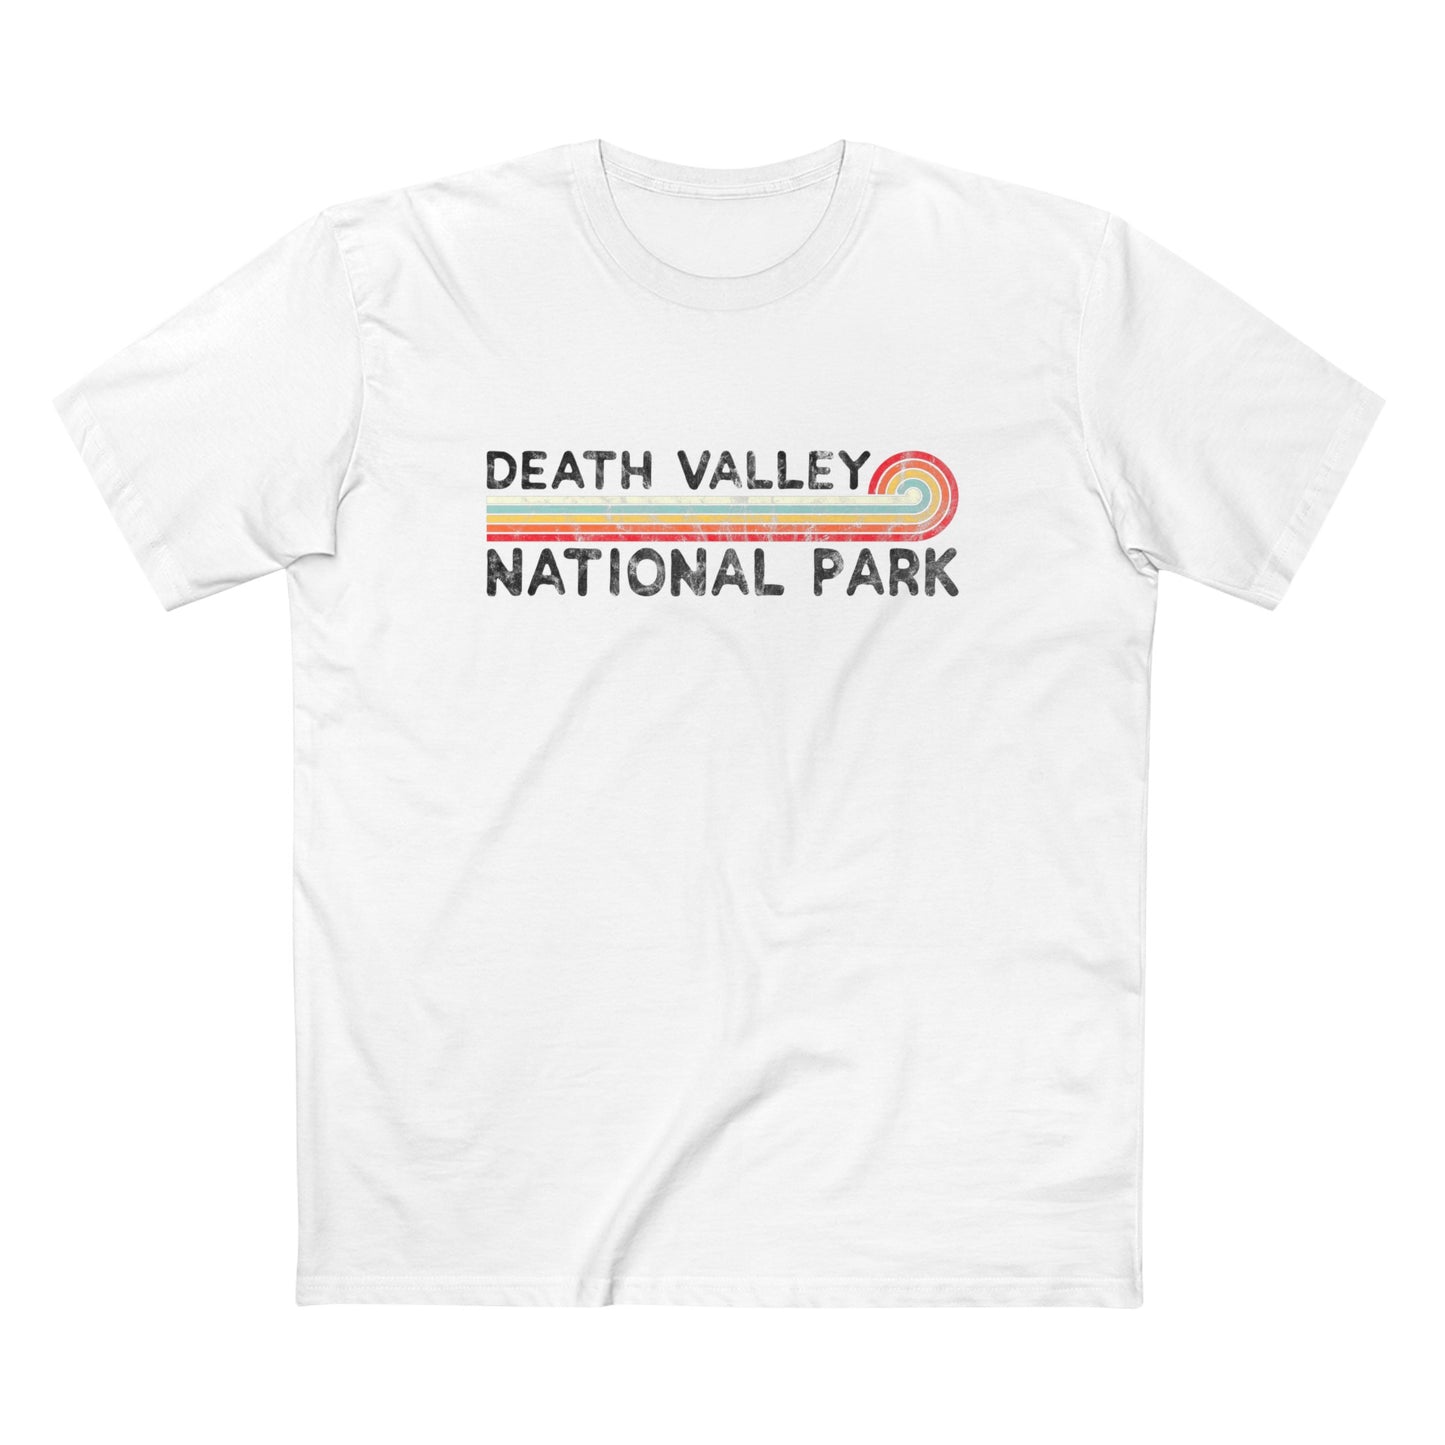 Death Valley National Park T-Shirt - Vintage Stretched Sunrise